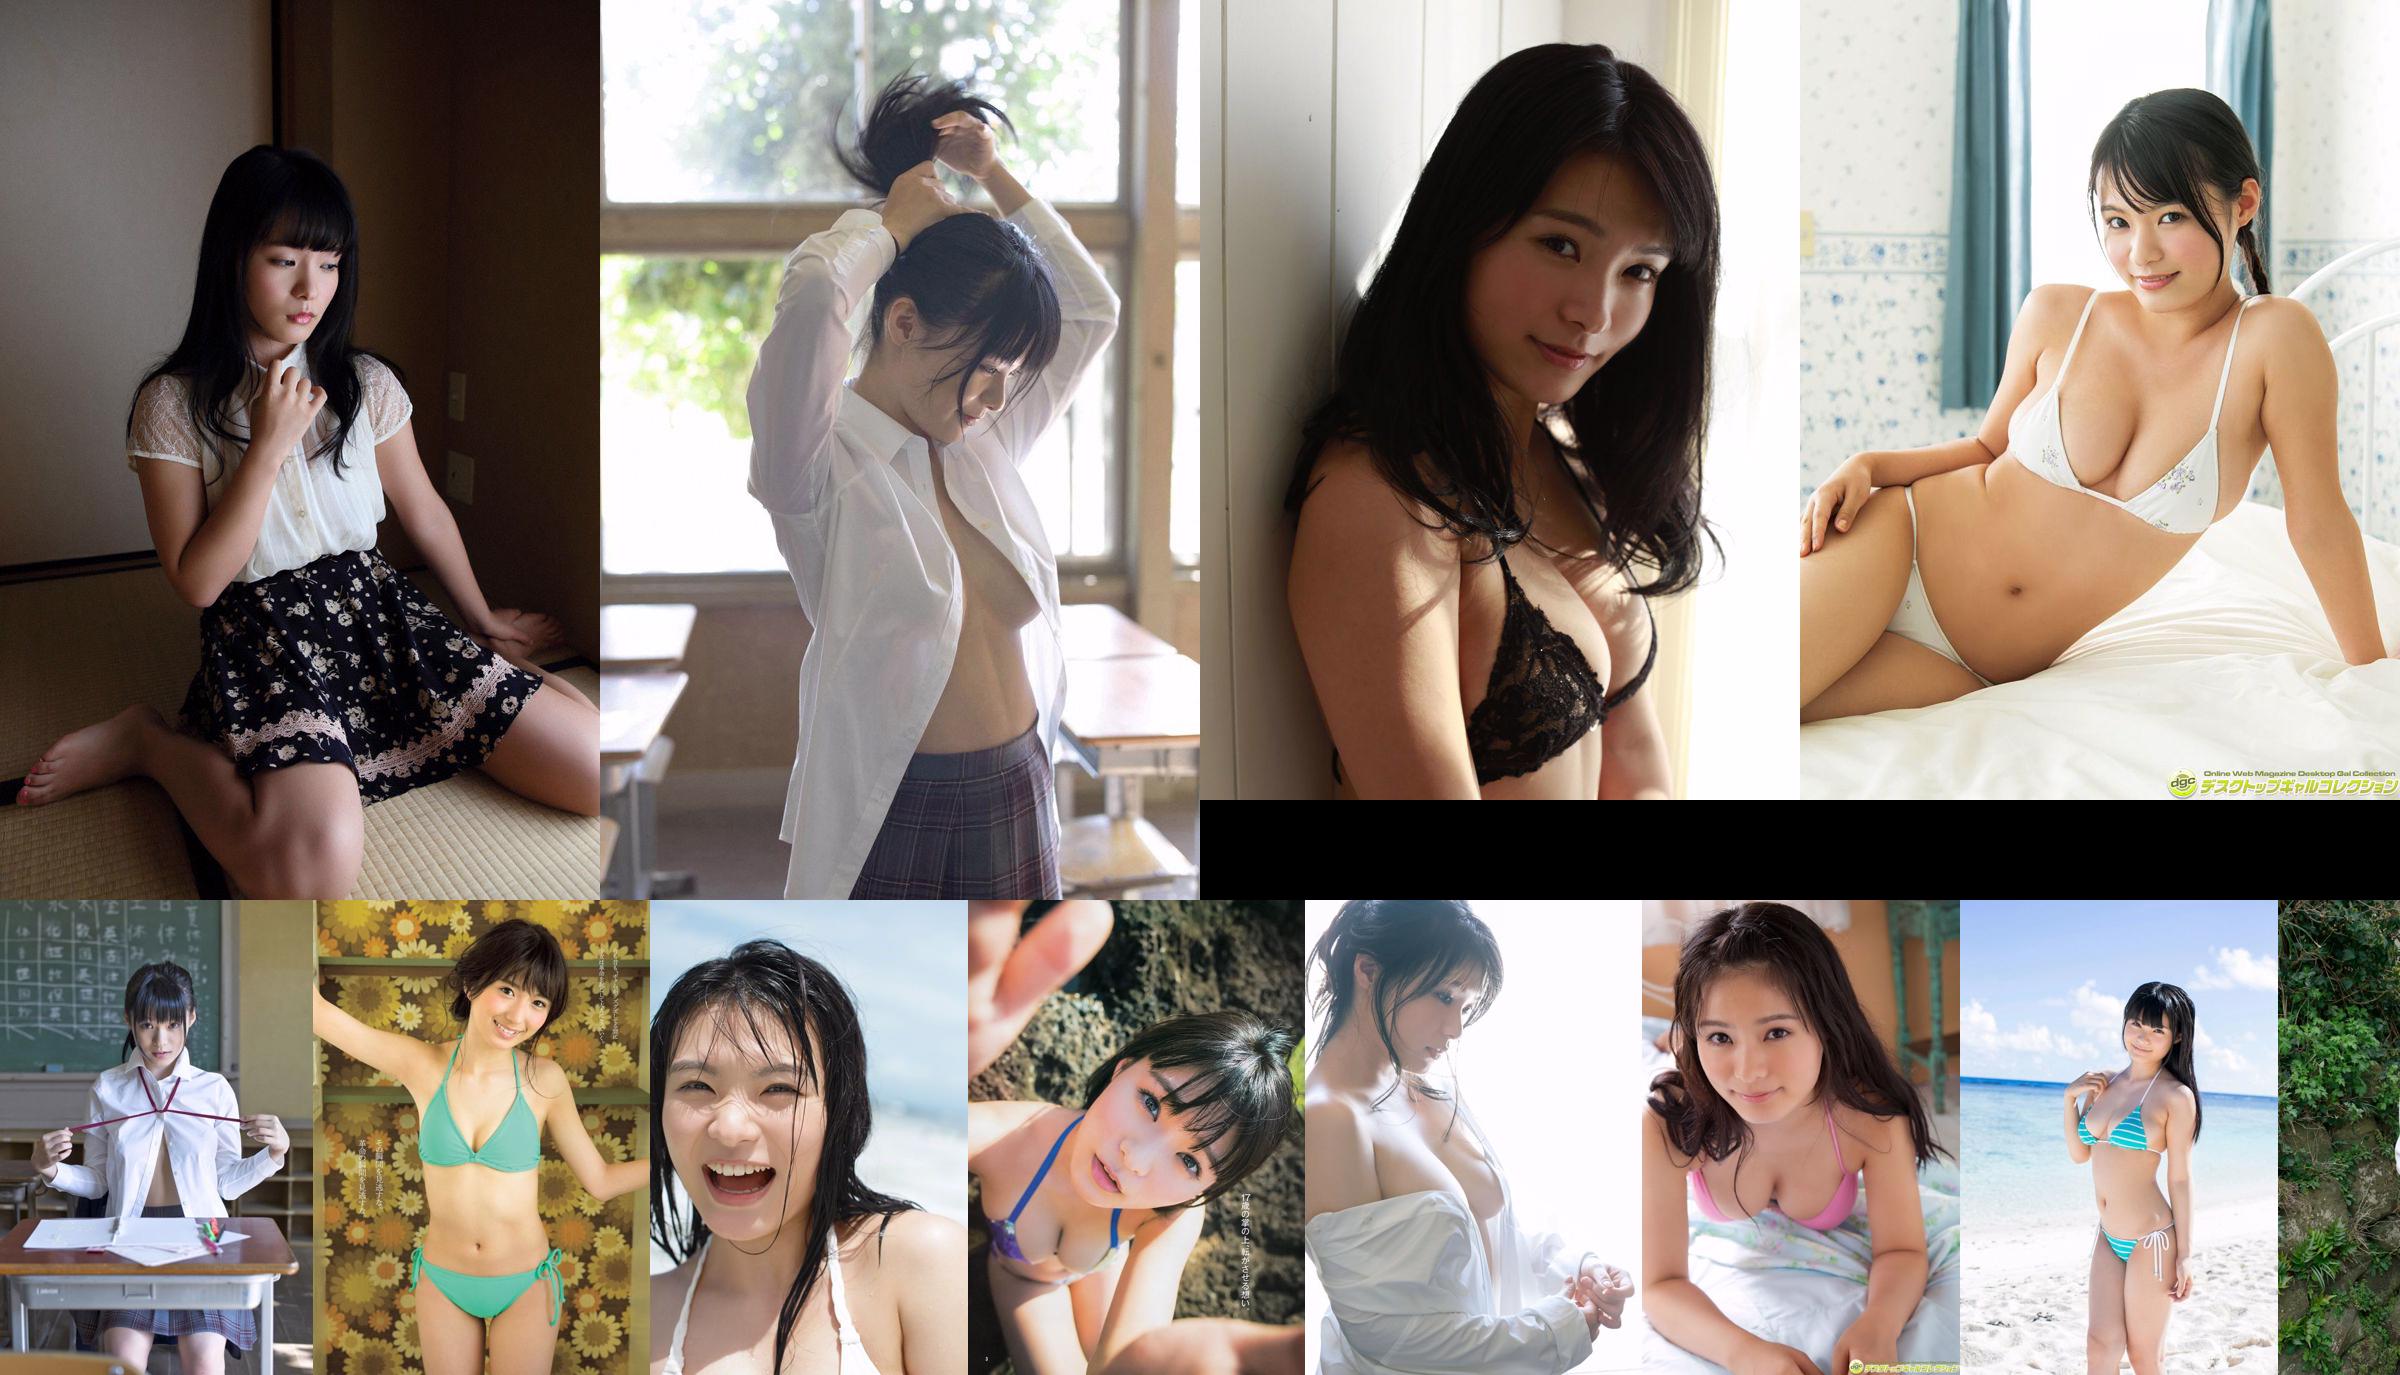 Sayaka Yamamoto Rei Toda Aika Kanda Mariko Shinoda Rurika Yokoyama [Playboy hebdomadaire] 2012 No.49 Photographie No.8b1f9c Page 1